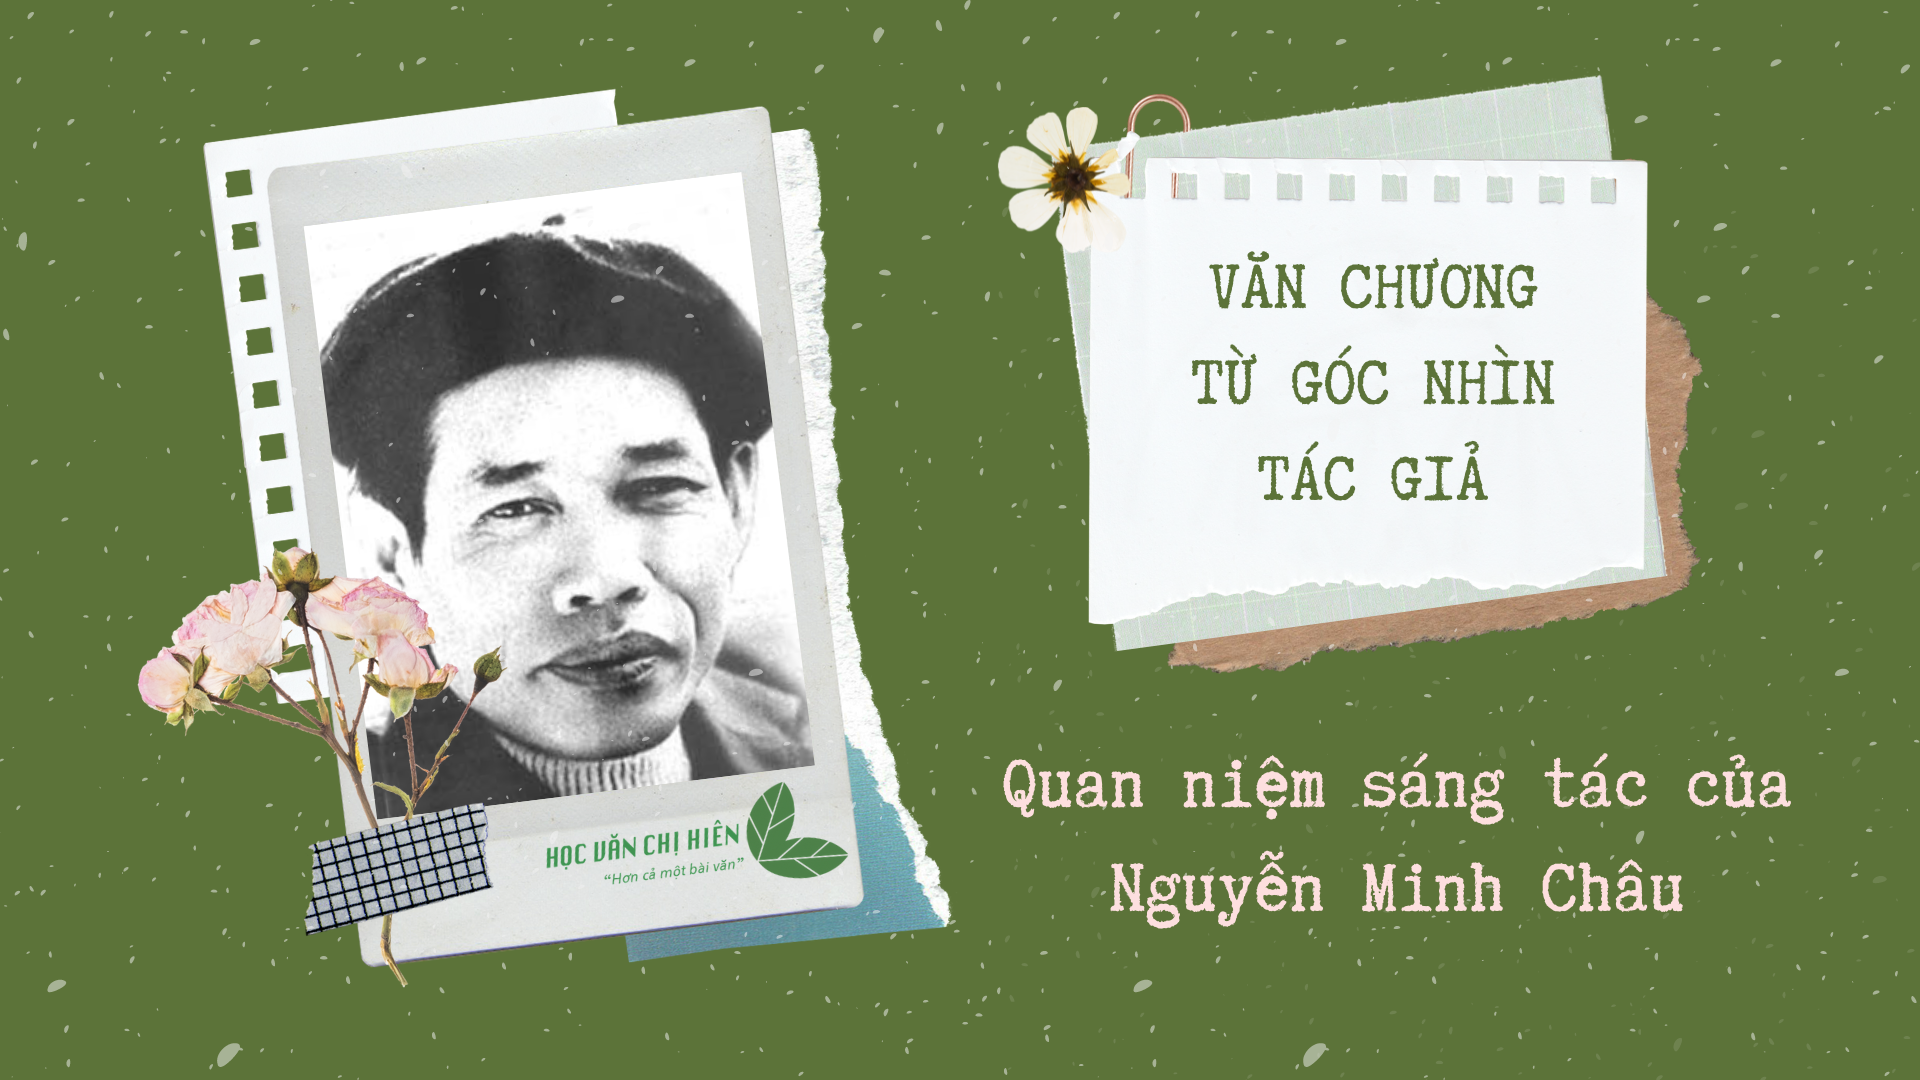 VĂN CHƯƠNG TỪ GÓC NHÌN TÁC GIẢ | Quan niệm sáng tác của Nguyễn Minh Châu